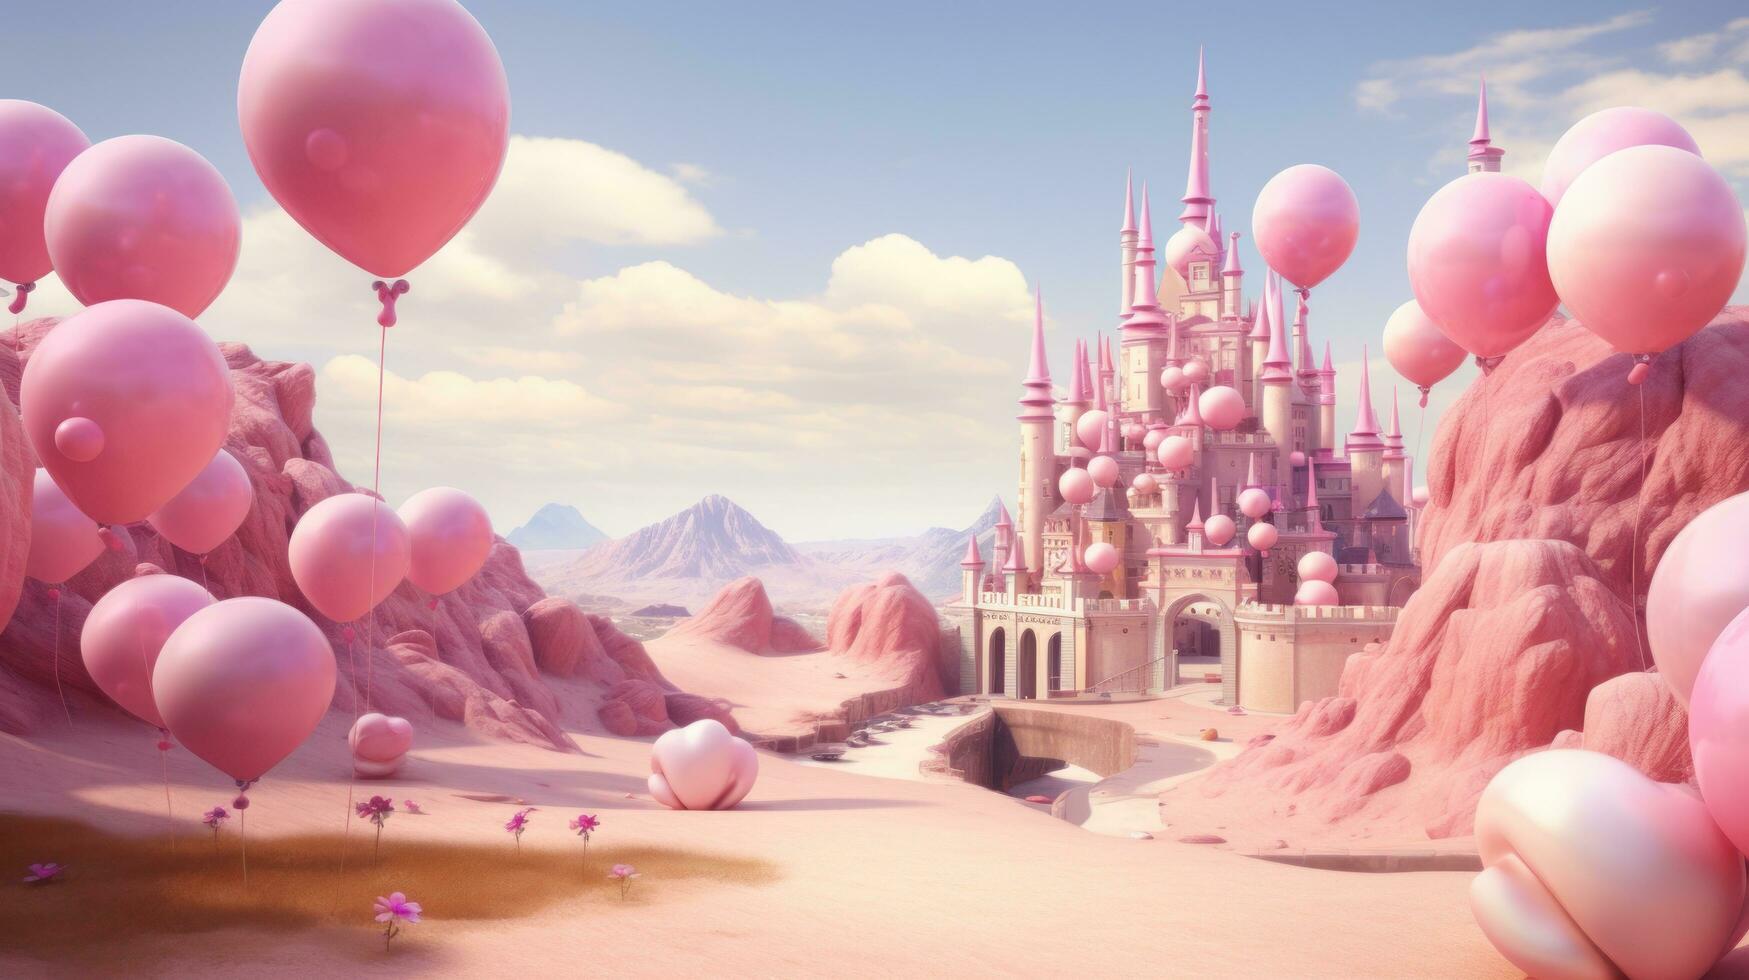 Pink princess castle photo